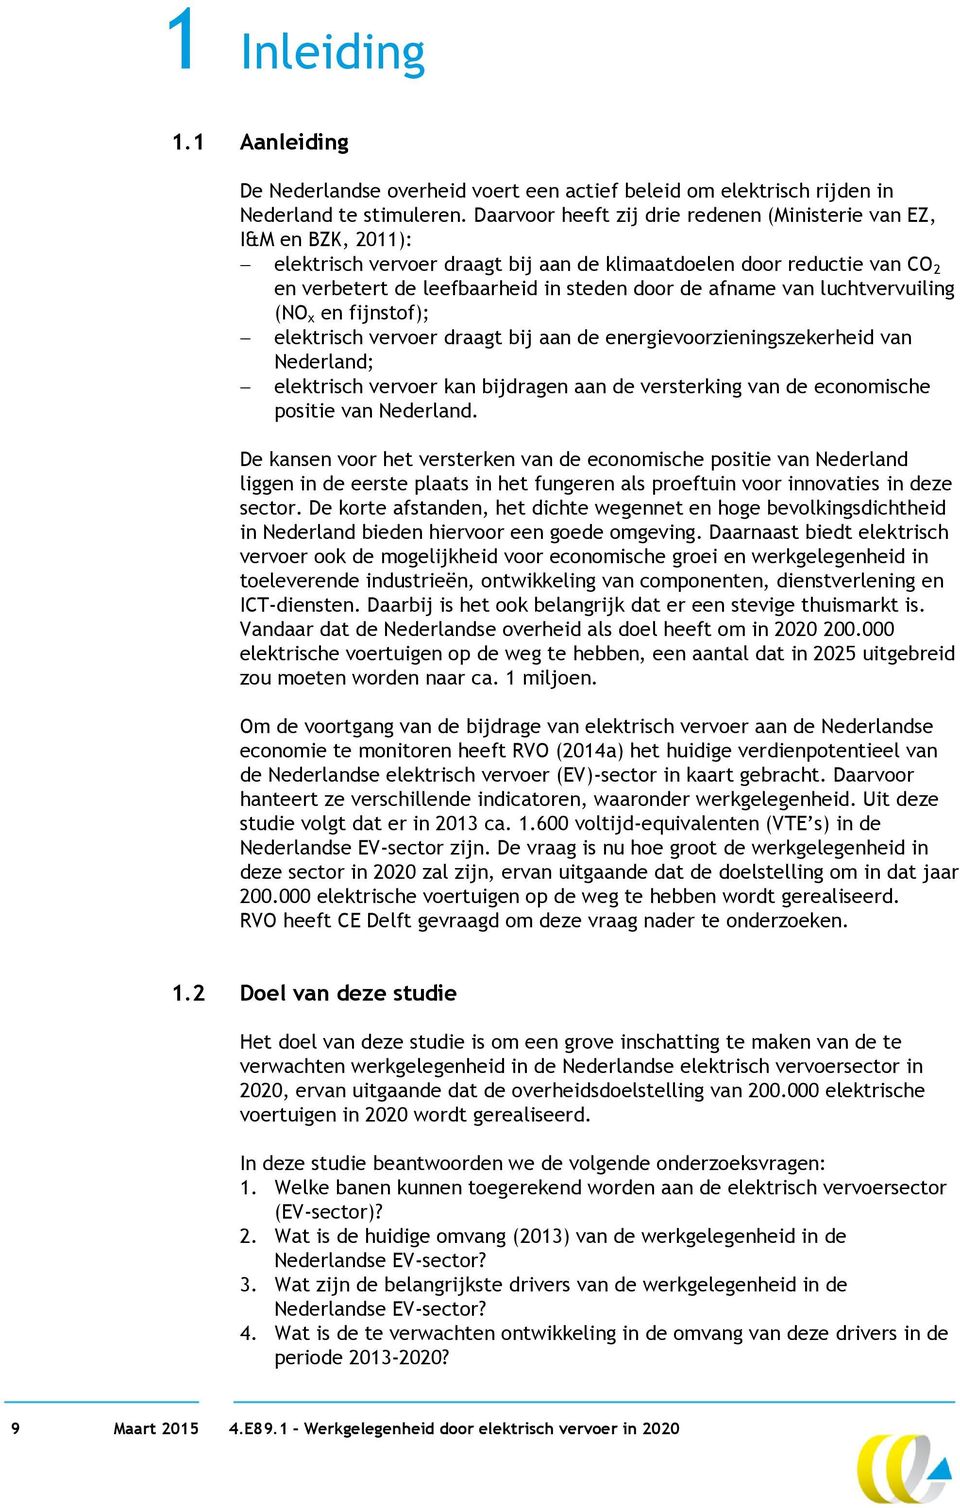 van luchtvervuiling (NO x en fijnstof); elektrisch vervoer draagt bij aan de energievoorzieningszekerheid van Nederland; elektrisch vervoer kan bijdragen aan de versterking van de economische positie